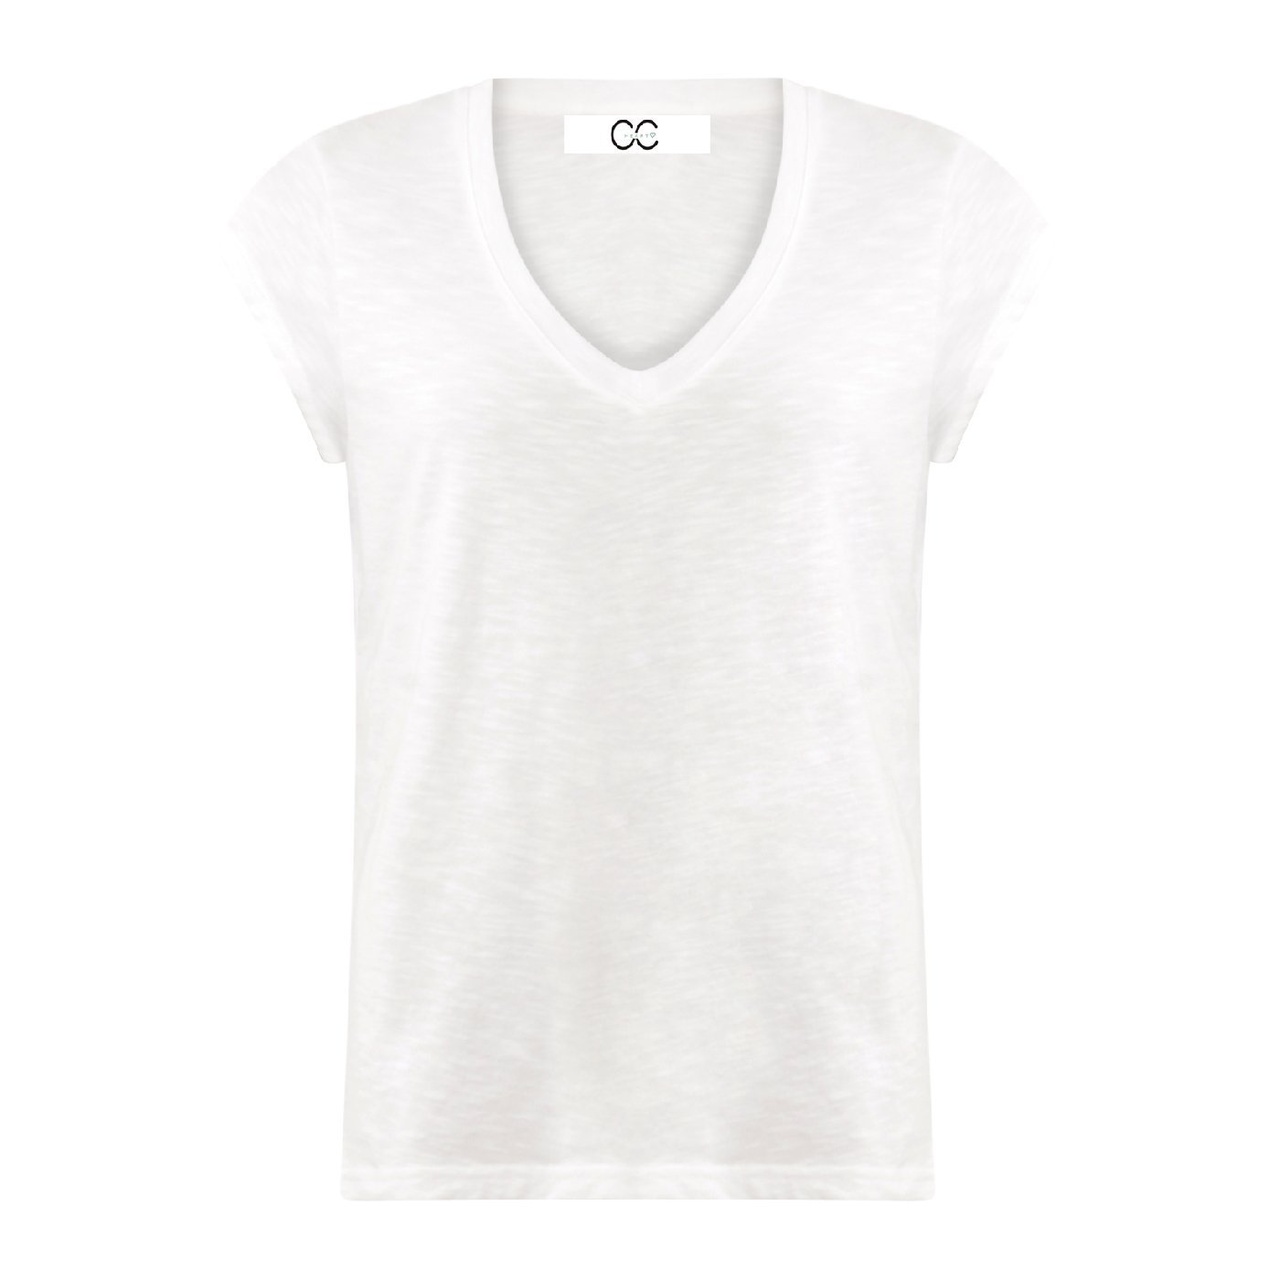 CC Heart V-neck T-shirt XS White